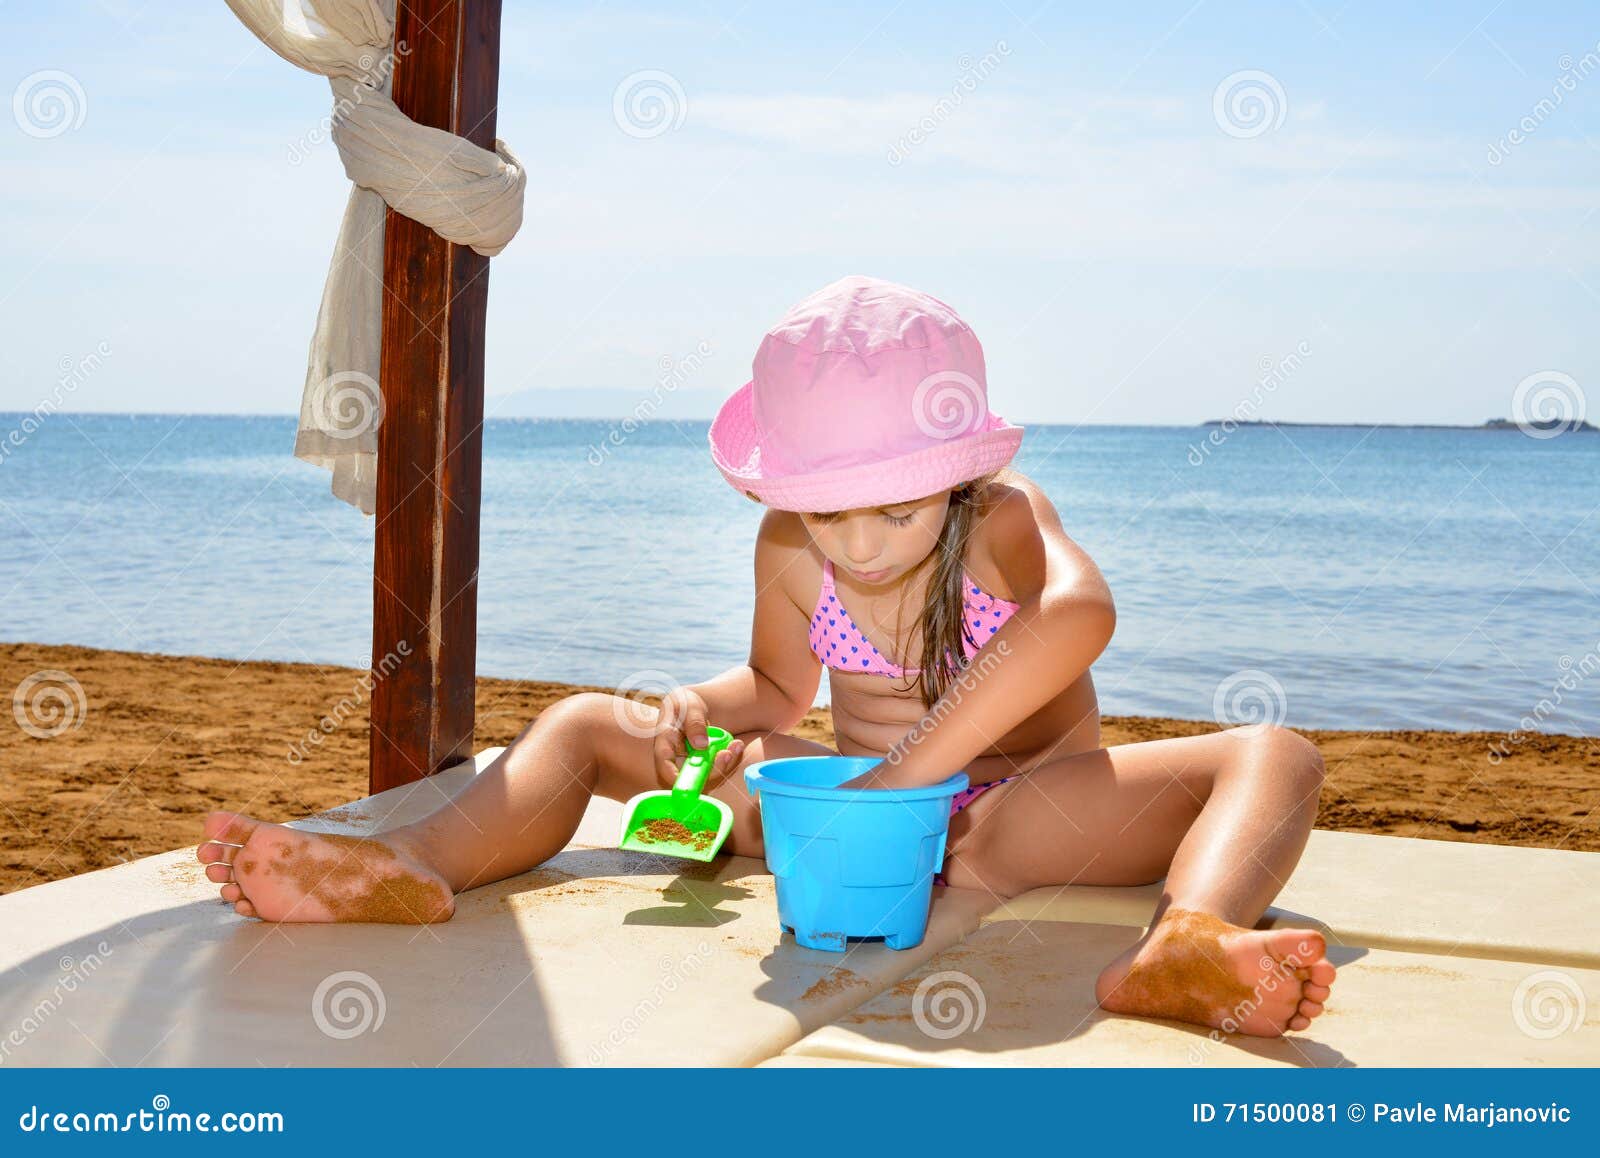 с детьми голым на пляж фото 71